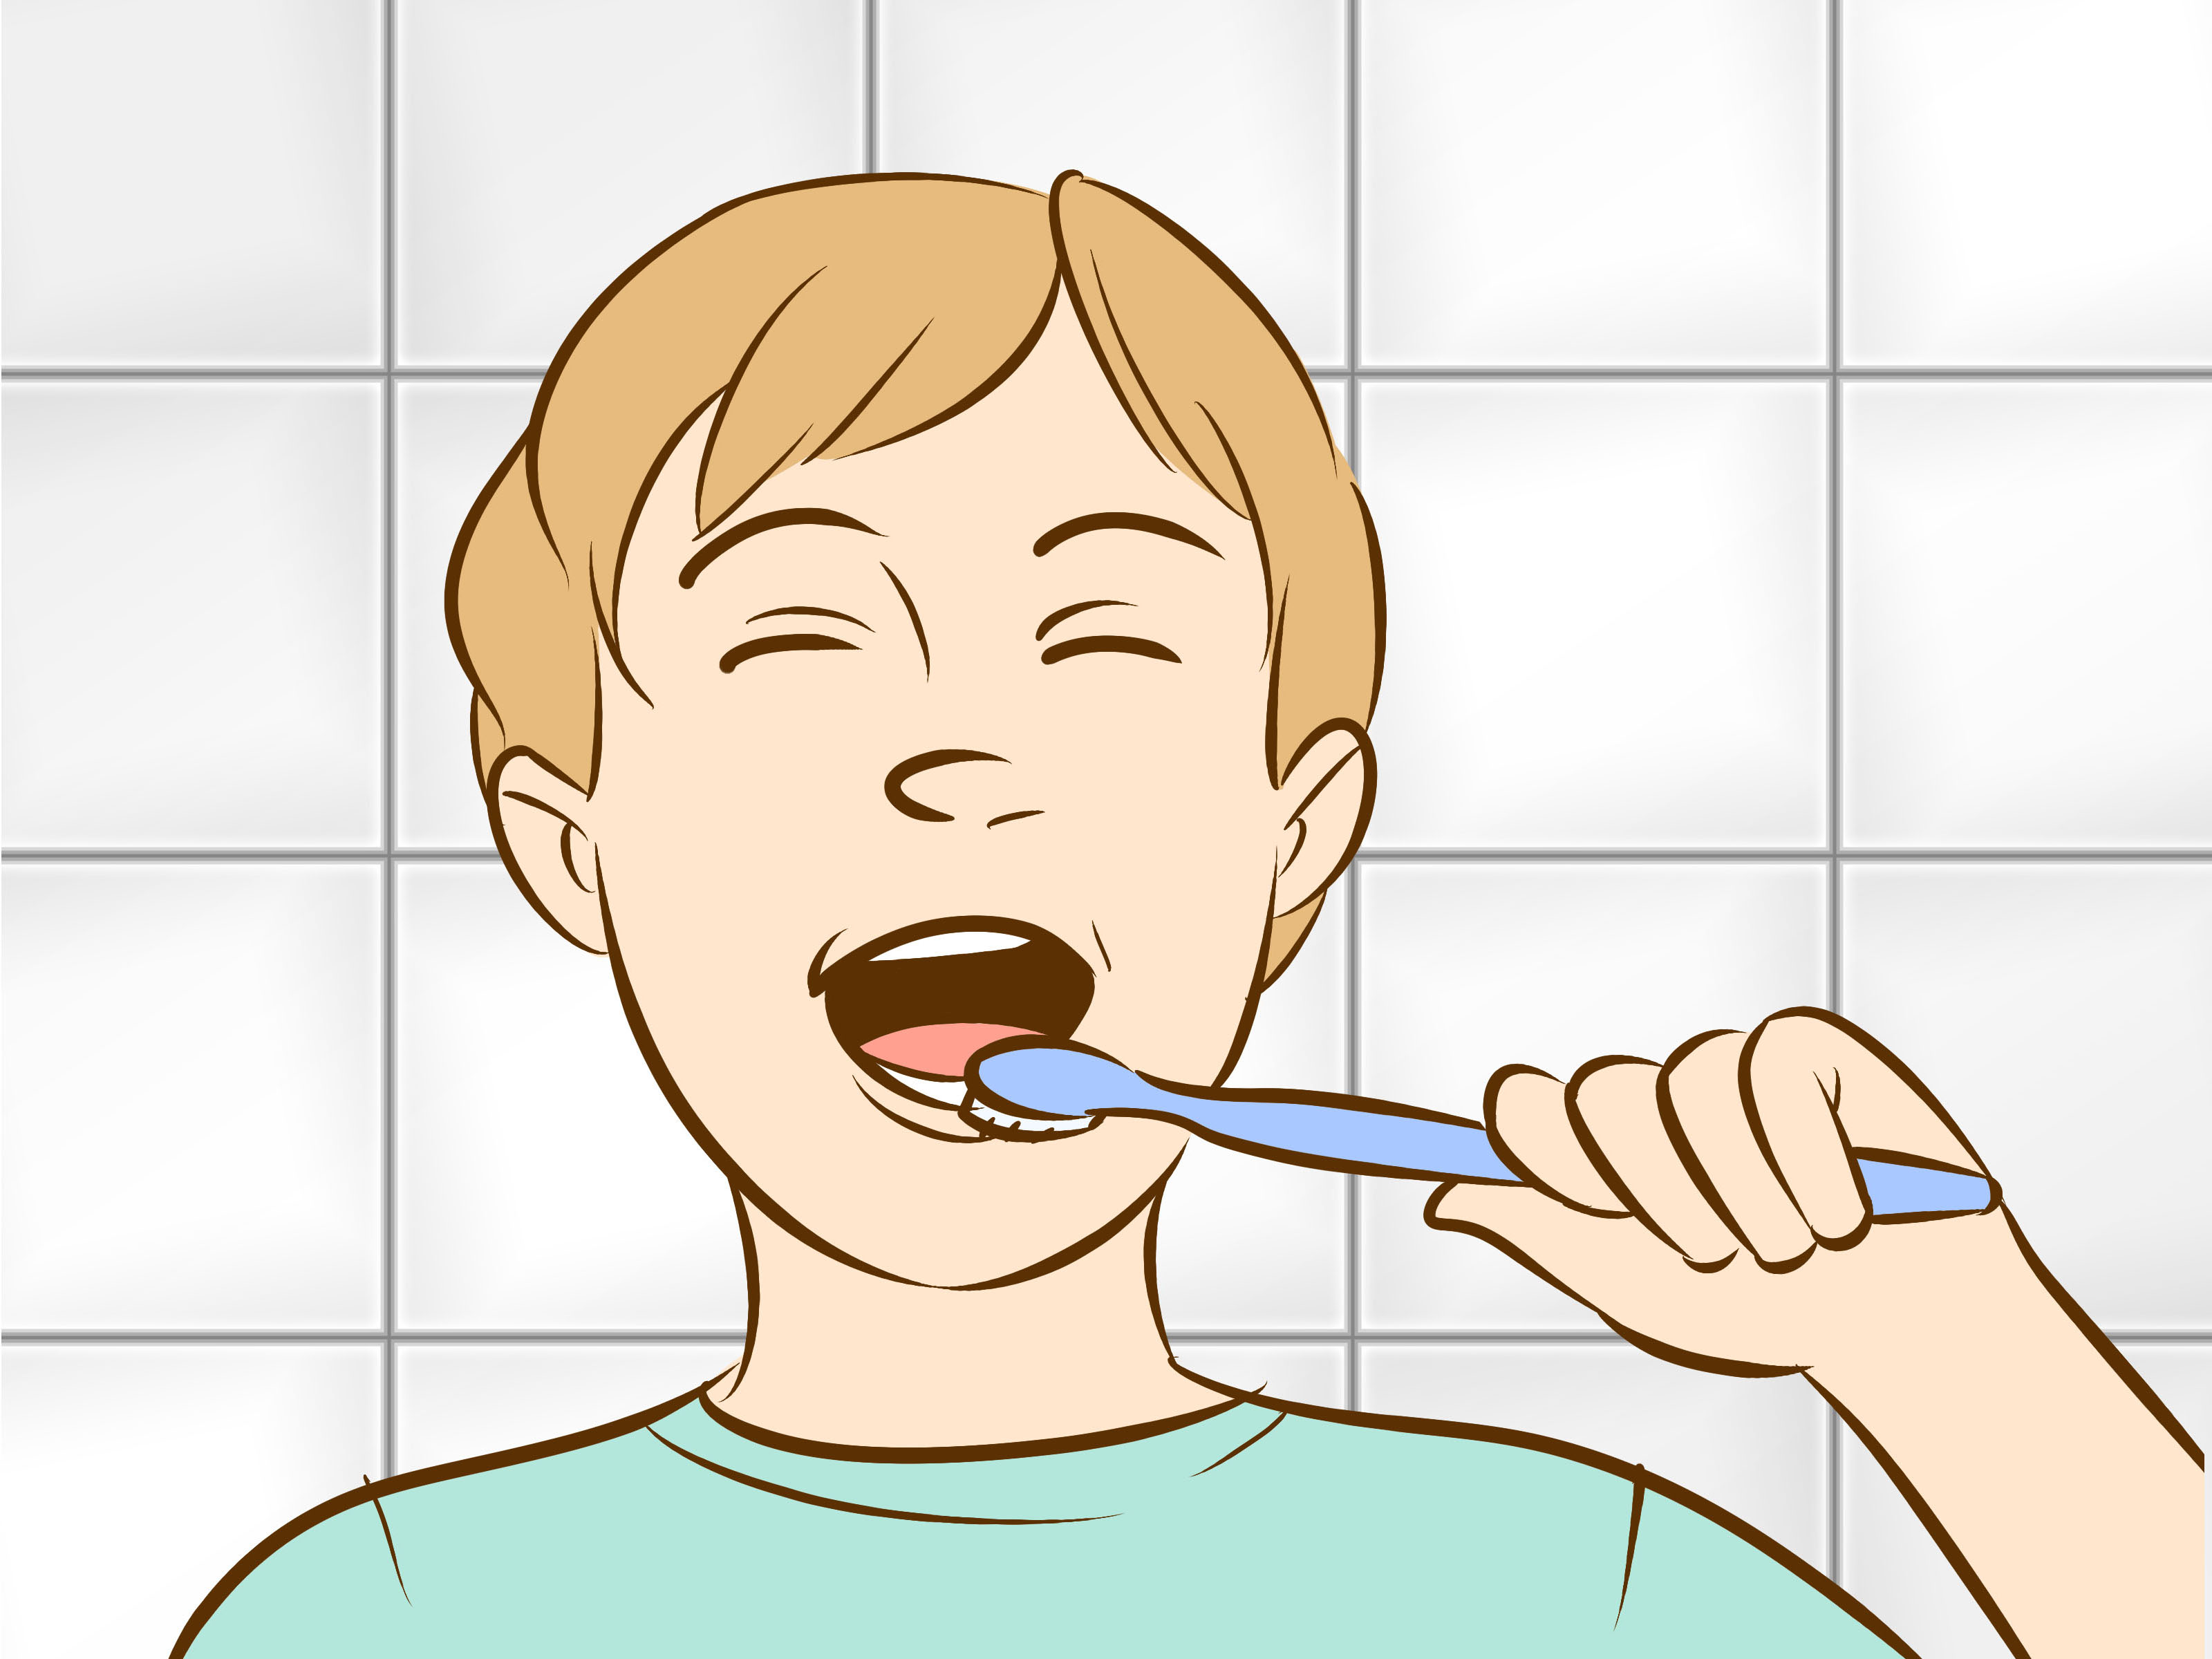 Do your teeth. Человек чистит зубы рисунок. Два человека чистят зубы рисунок. Personal Hygiene.